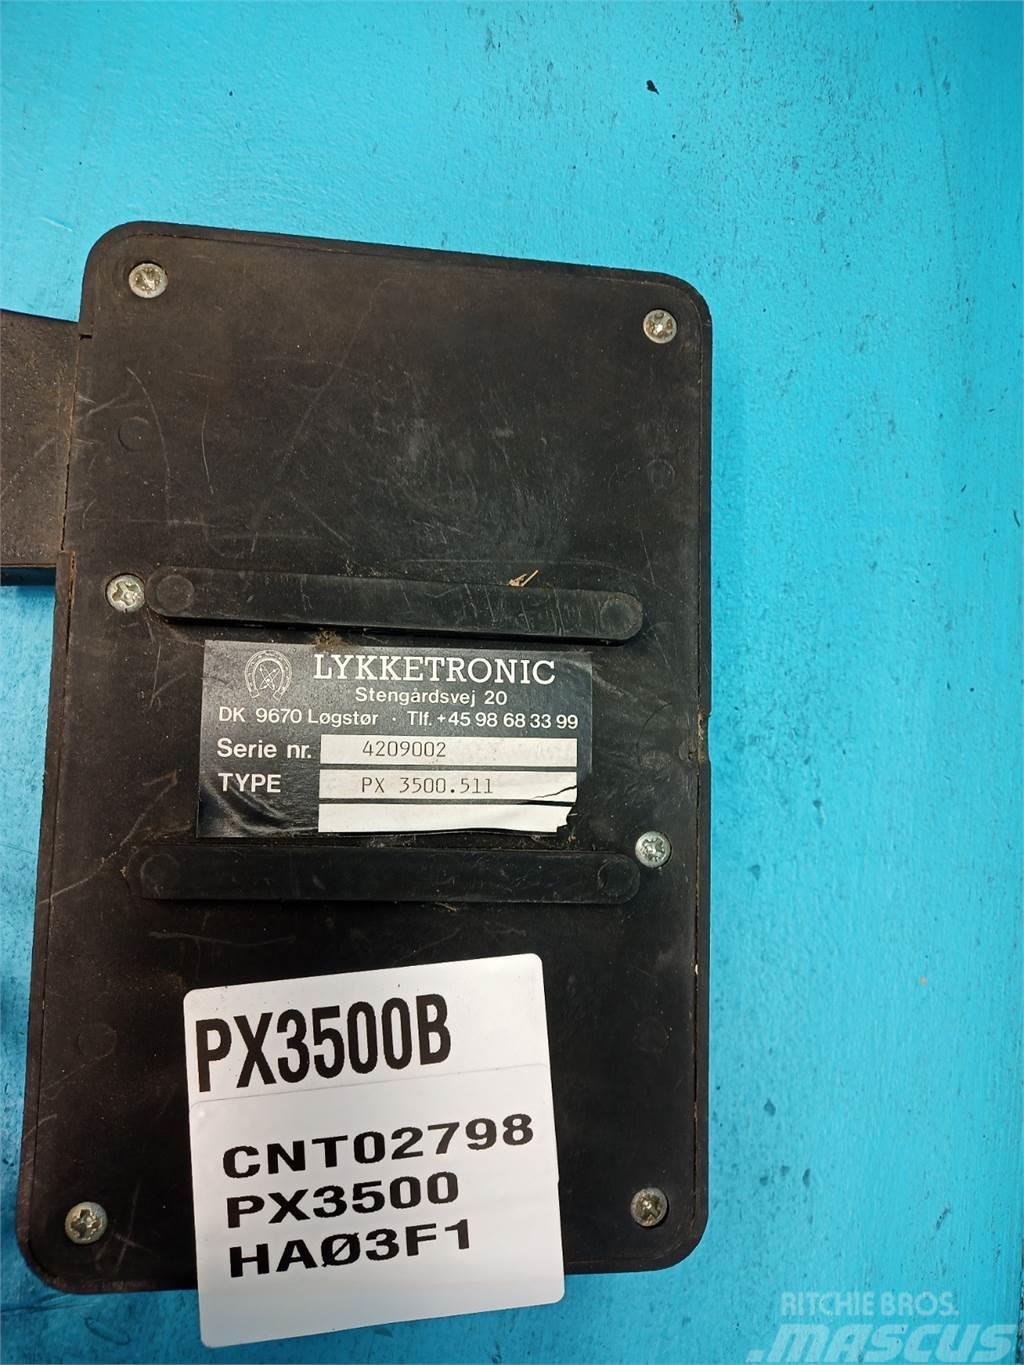  Lykketronic PX3500 Elektronik